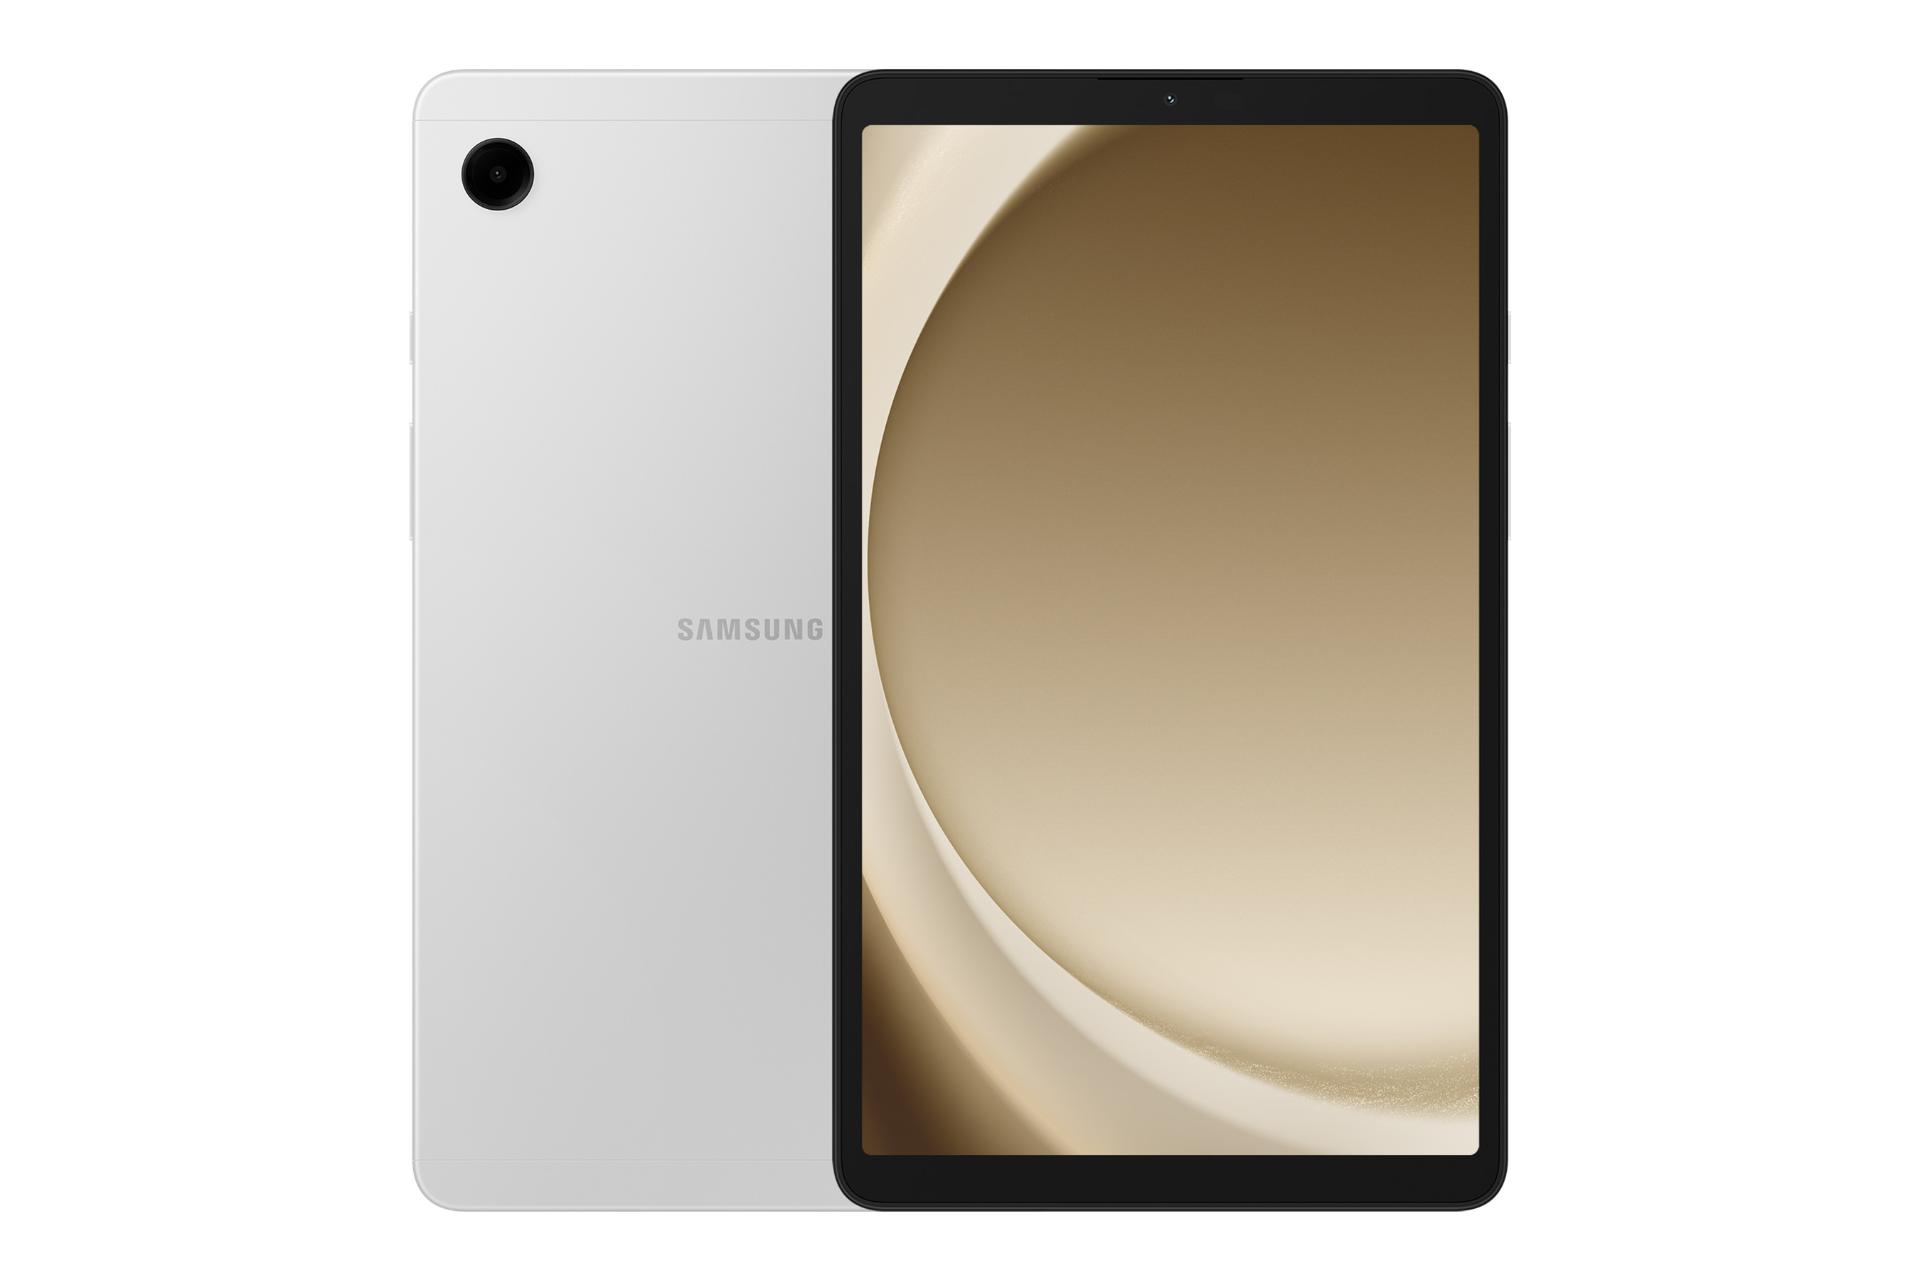 نمای کلی تبلت گلکسی تب A9 سامسونگ / Samsung Galaxy Tab A9 با نمایشگر روشن و نمایش لوگو و دوربین پنل پشت رنگ نقره ای